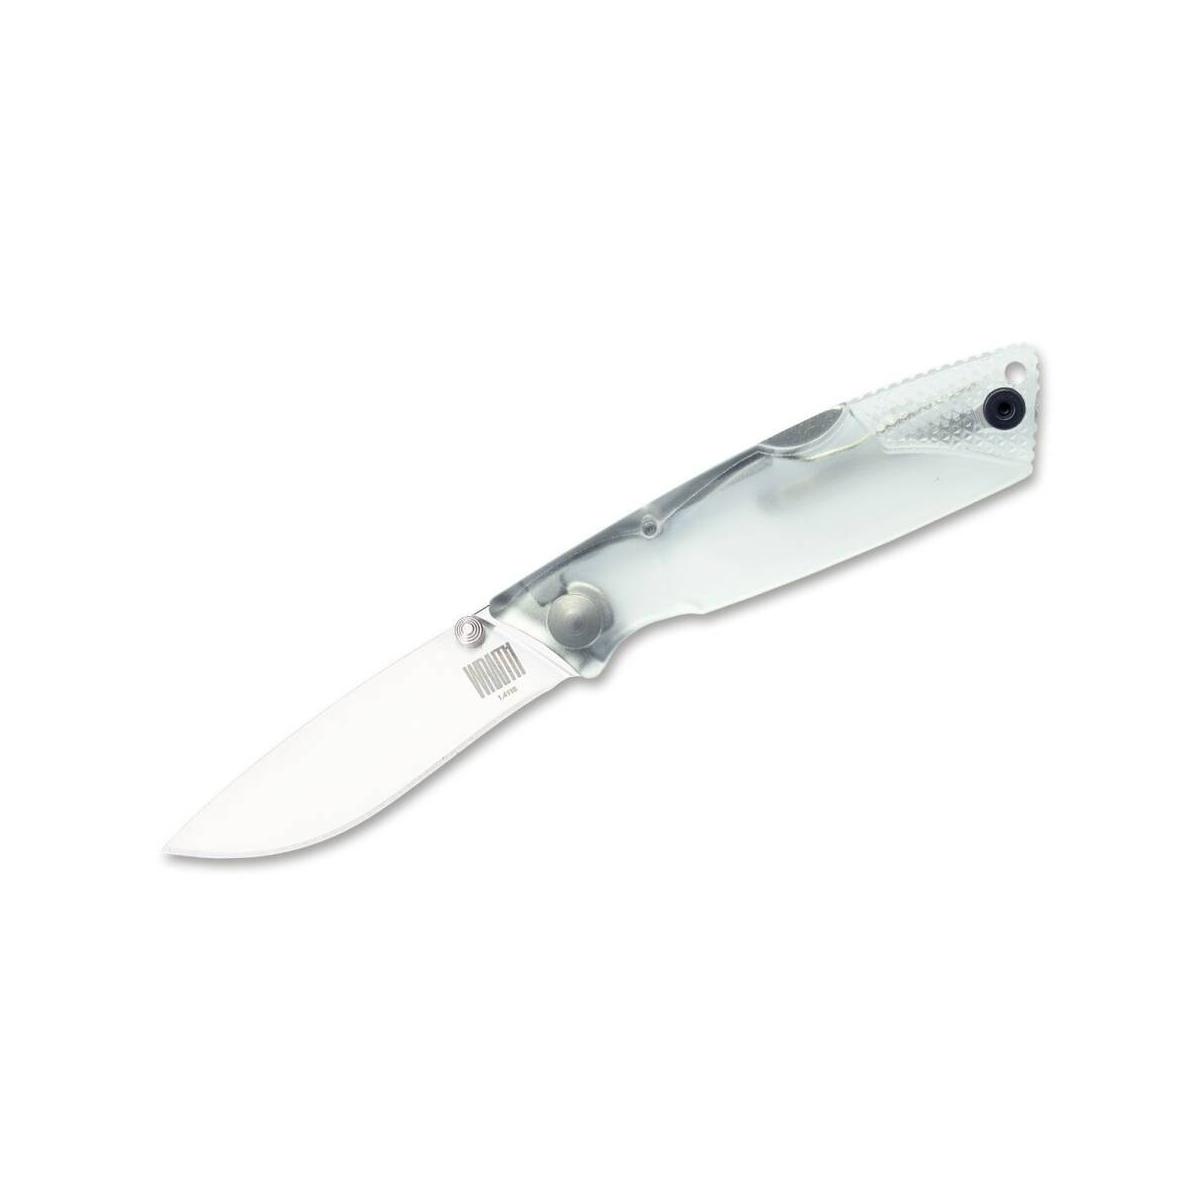 Ontario nóż składany Wraith przeźroczysty.